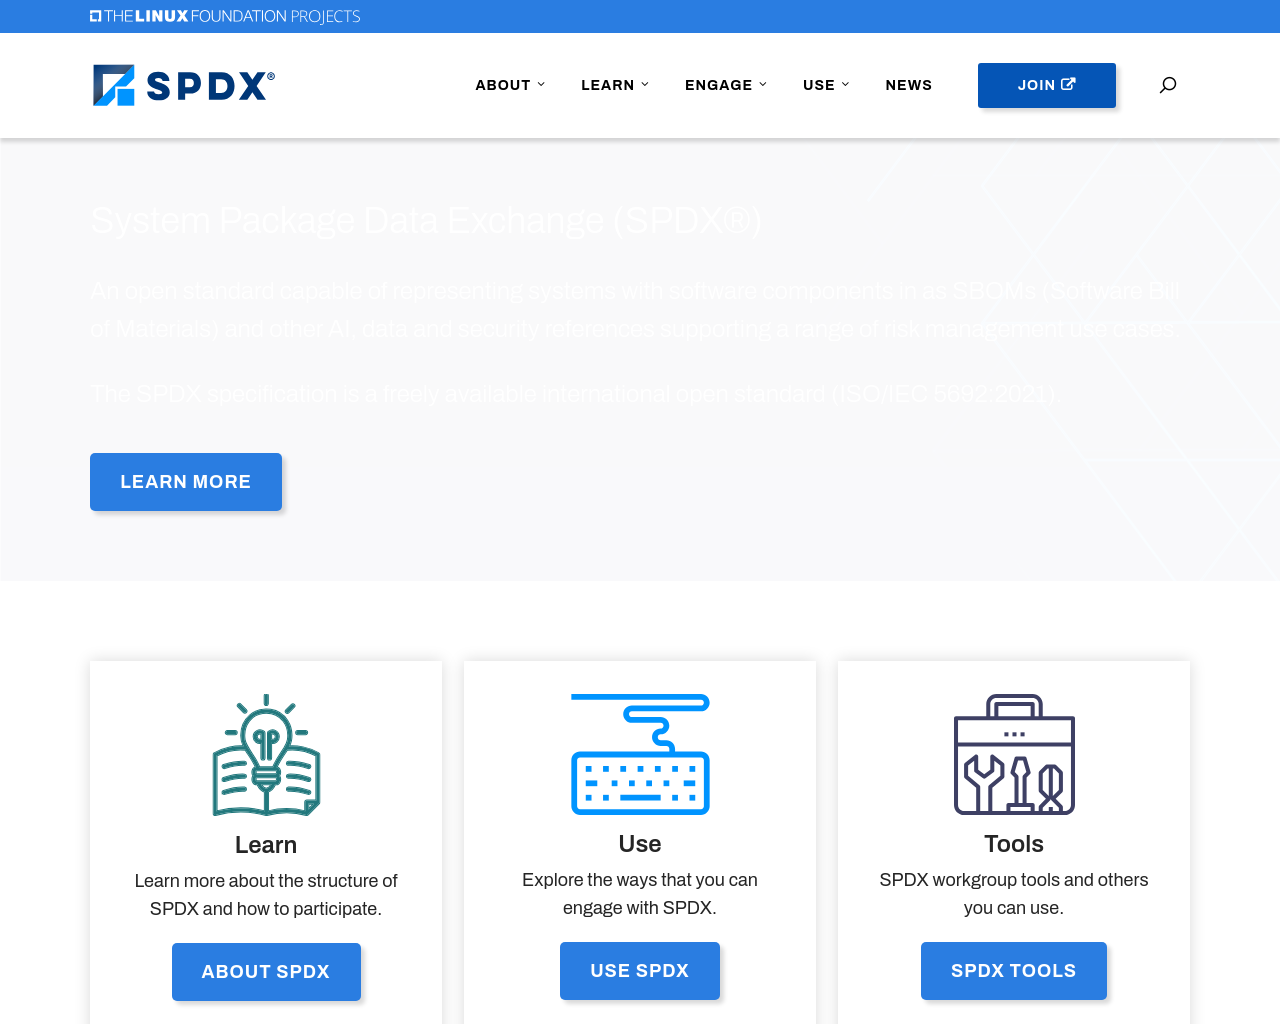 spdx.org